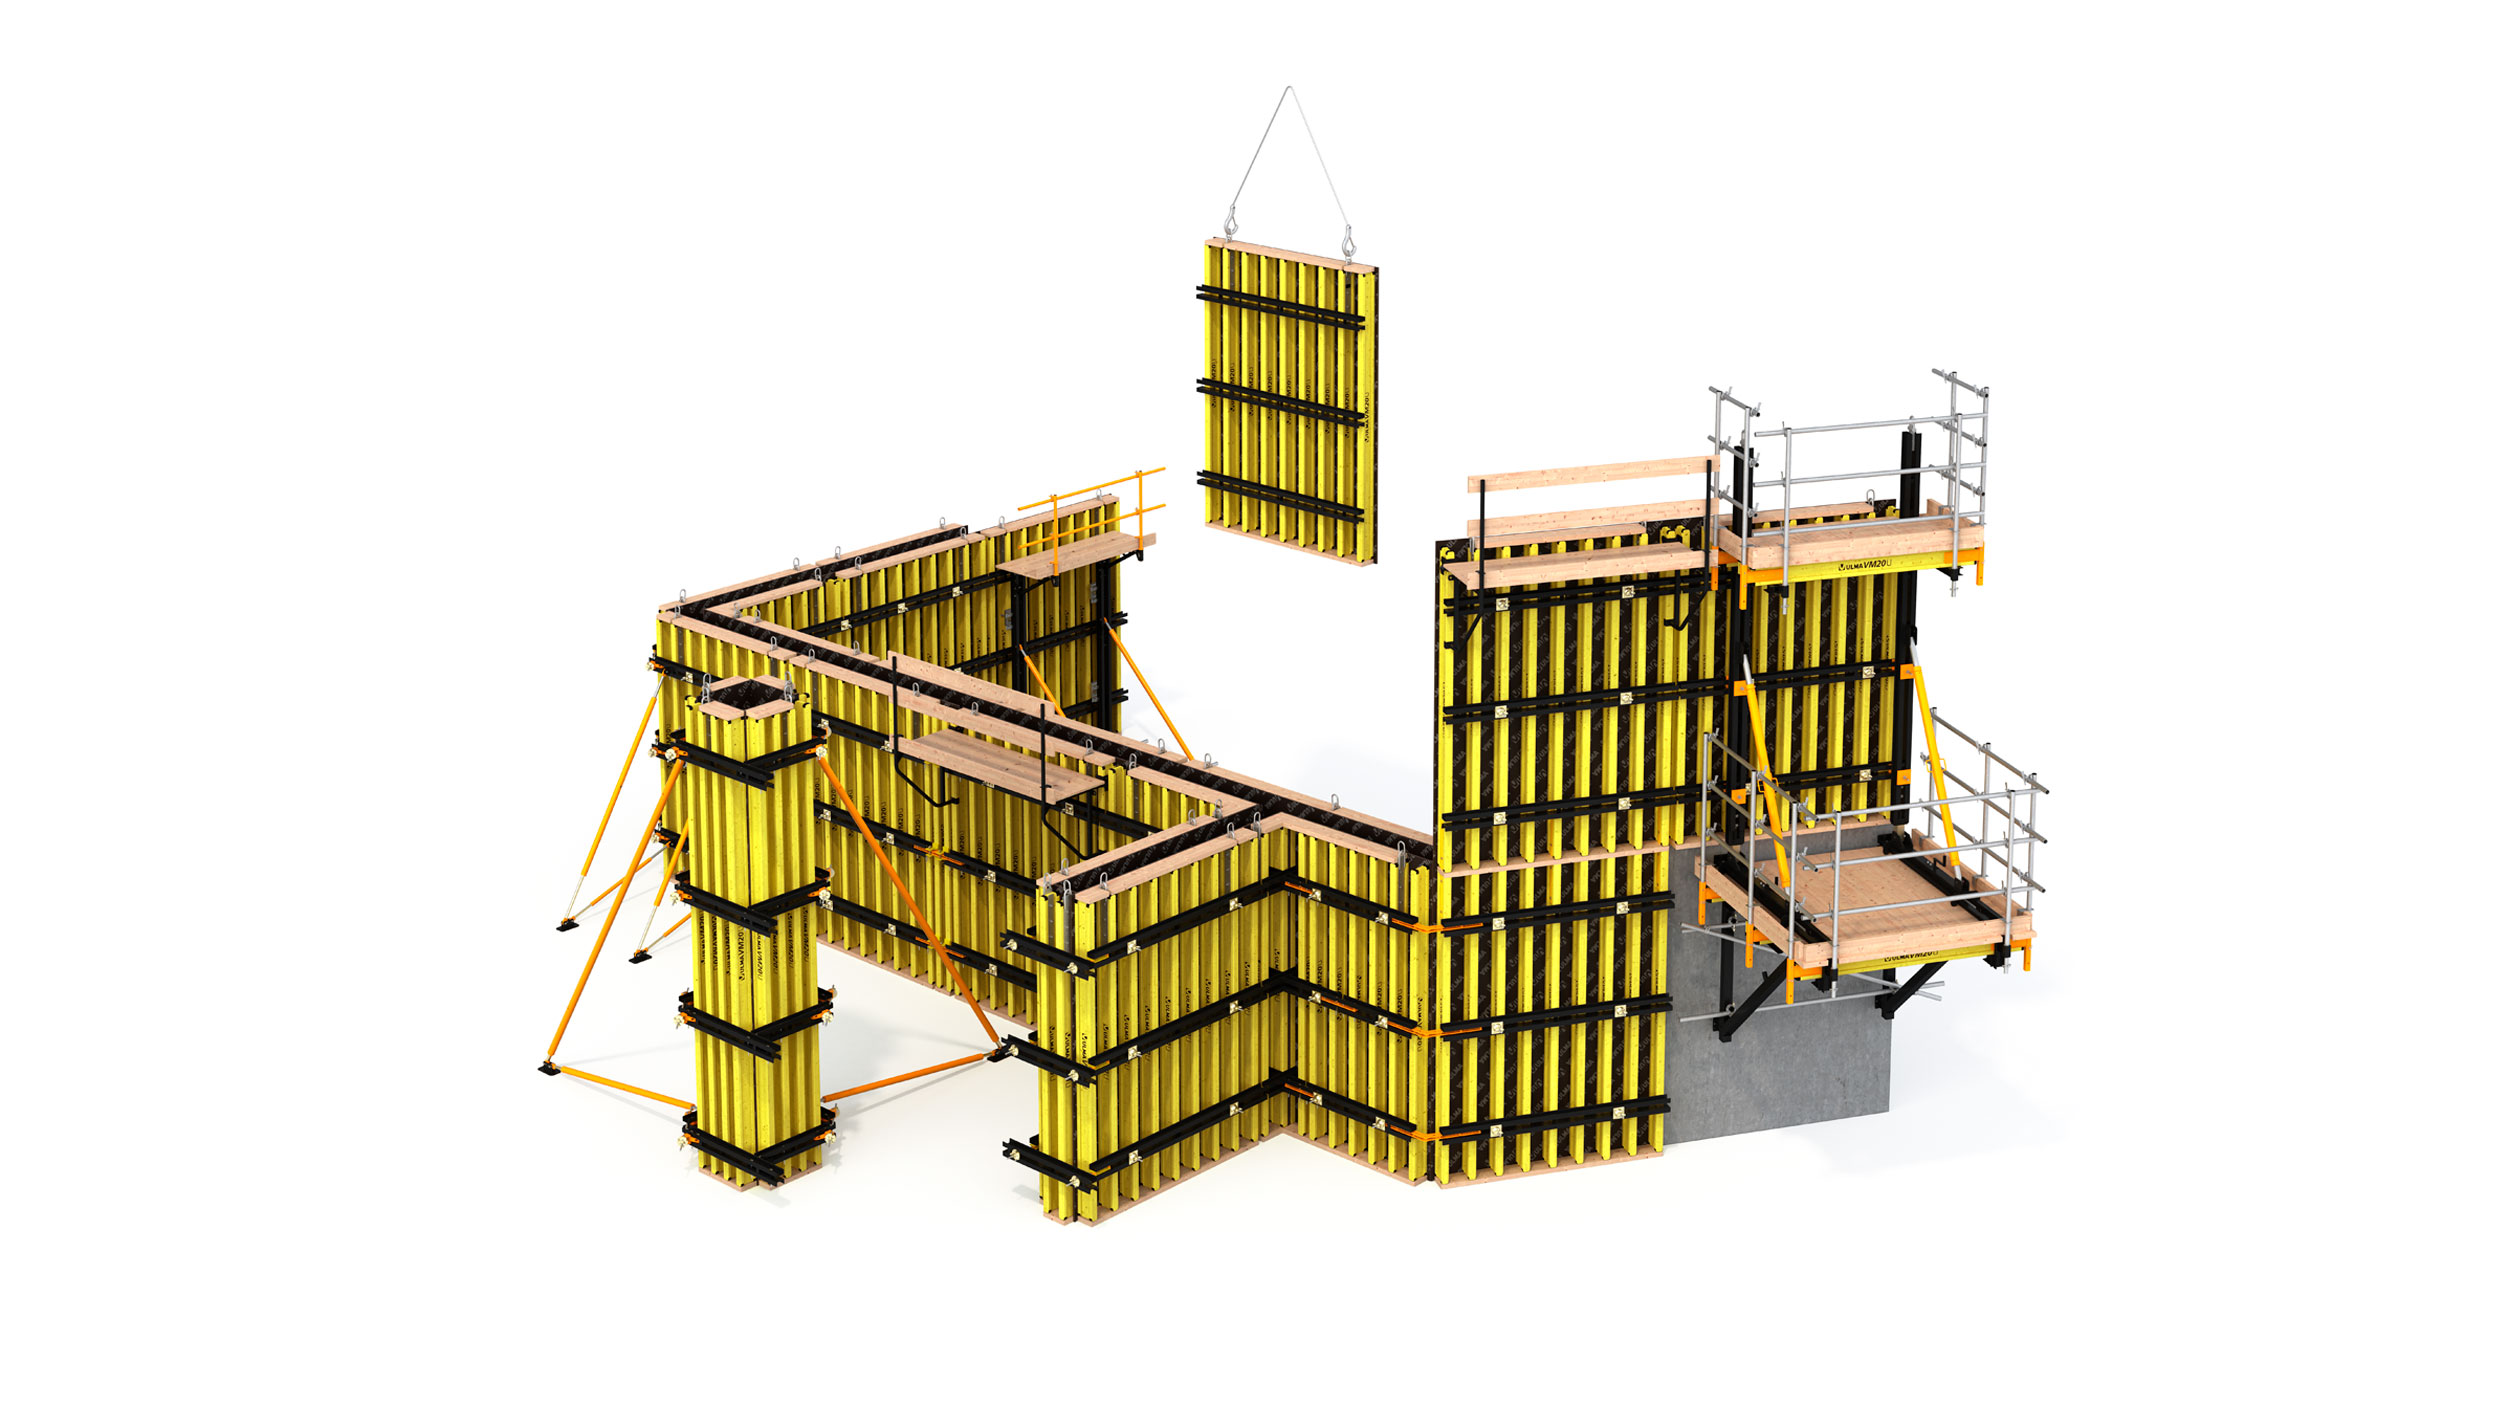 Cofragem de vigas de madeira de alta flexibilidade e adequação a estruturas verticais tanto em edificação e infraestrutura, com excelente acabamento de betão.